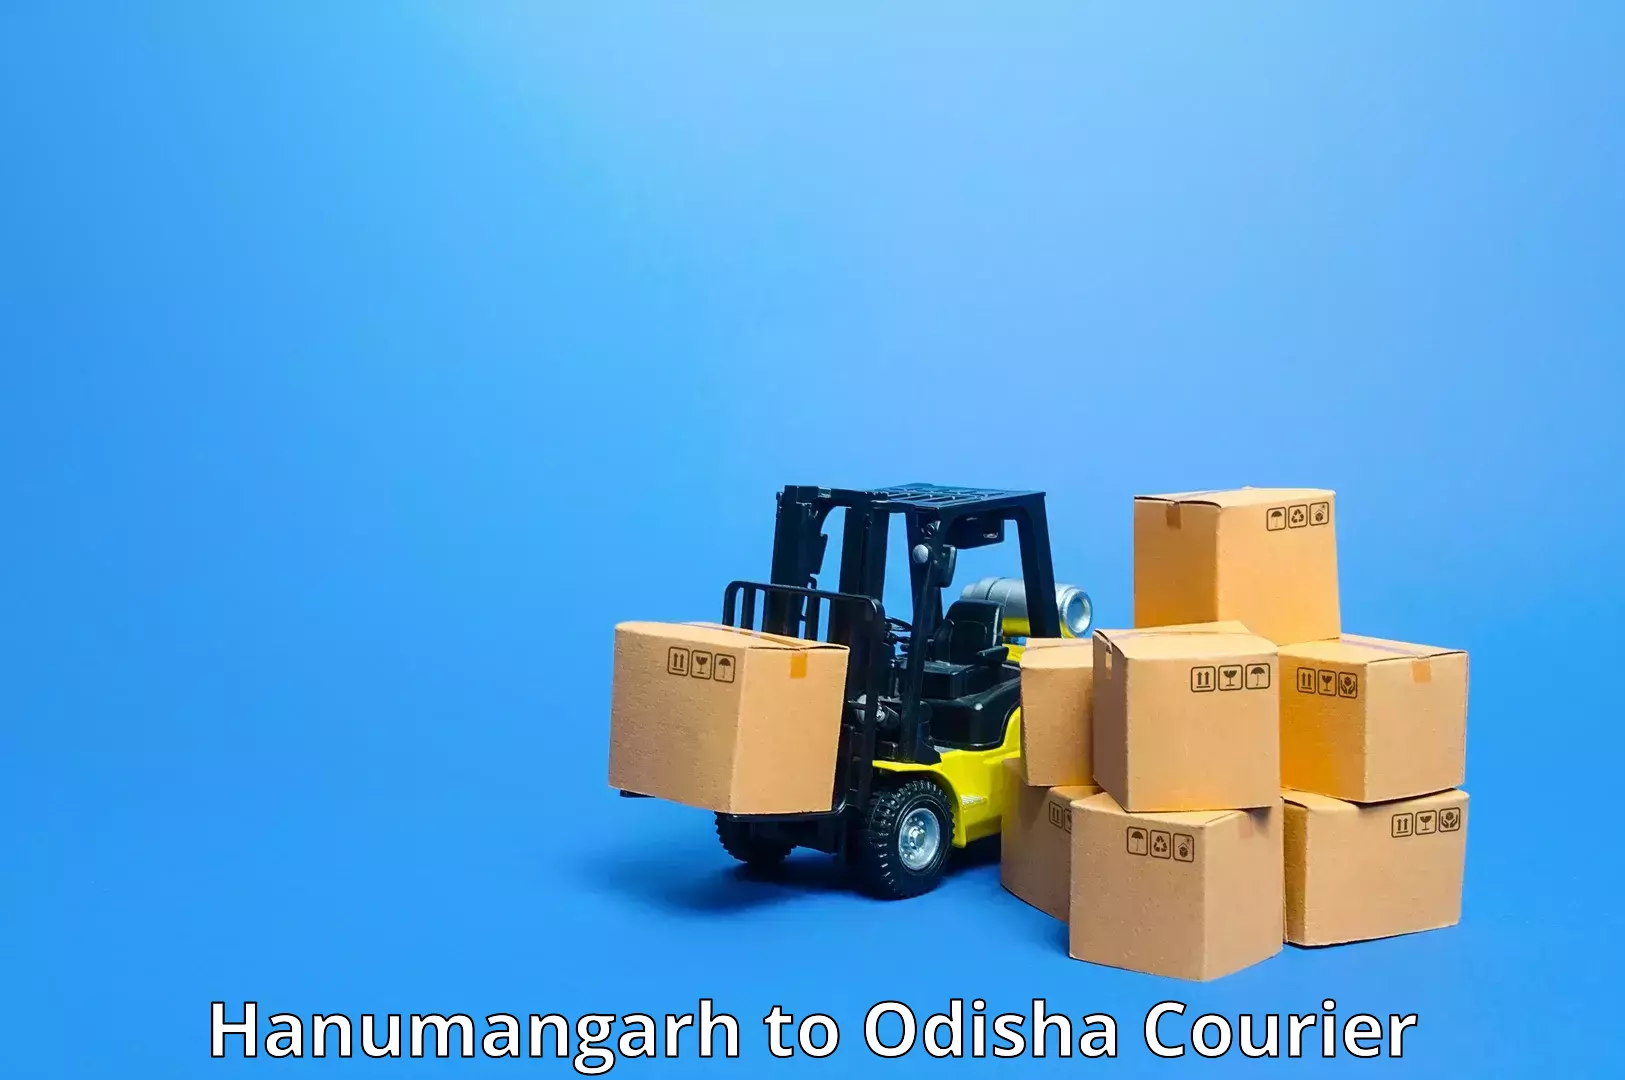 Advanced shipping network Hanumangarh to Balipokhari